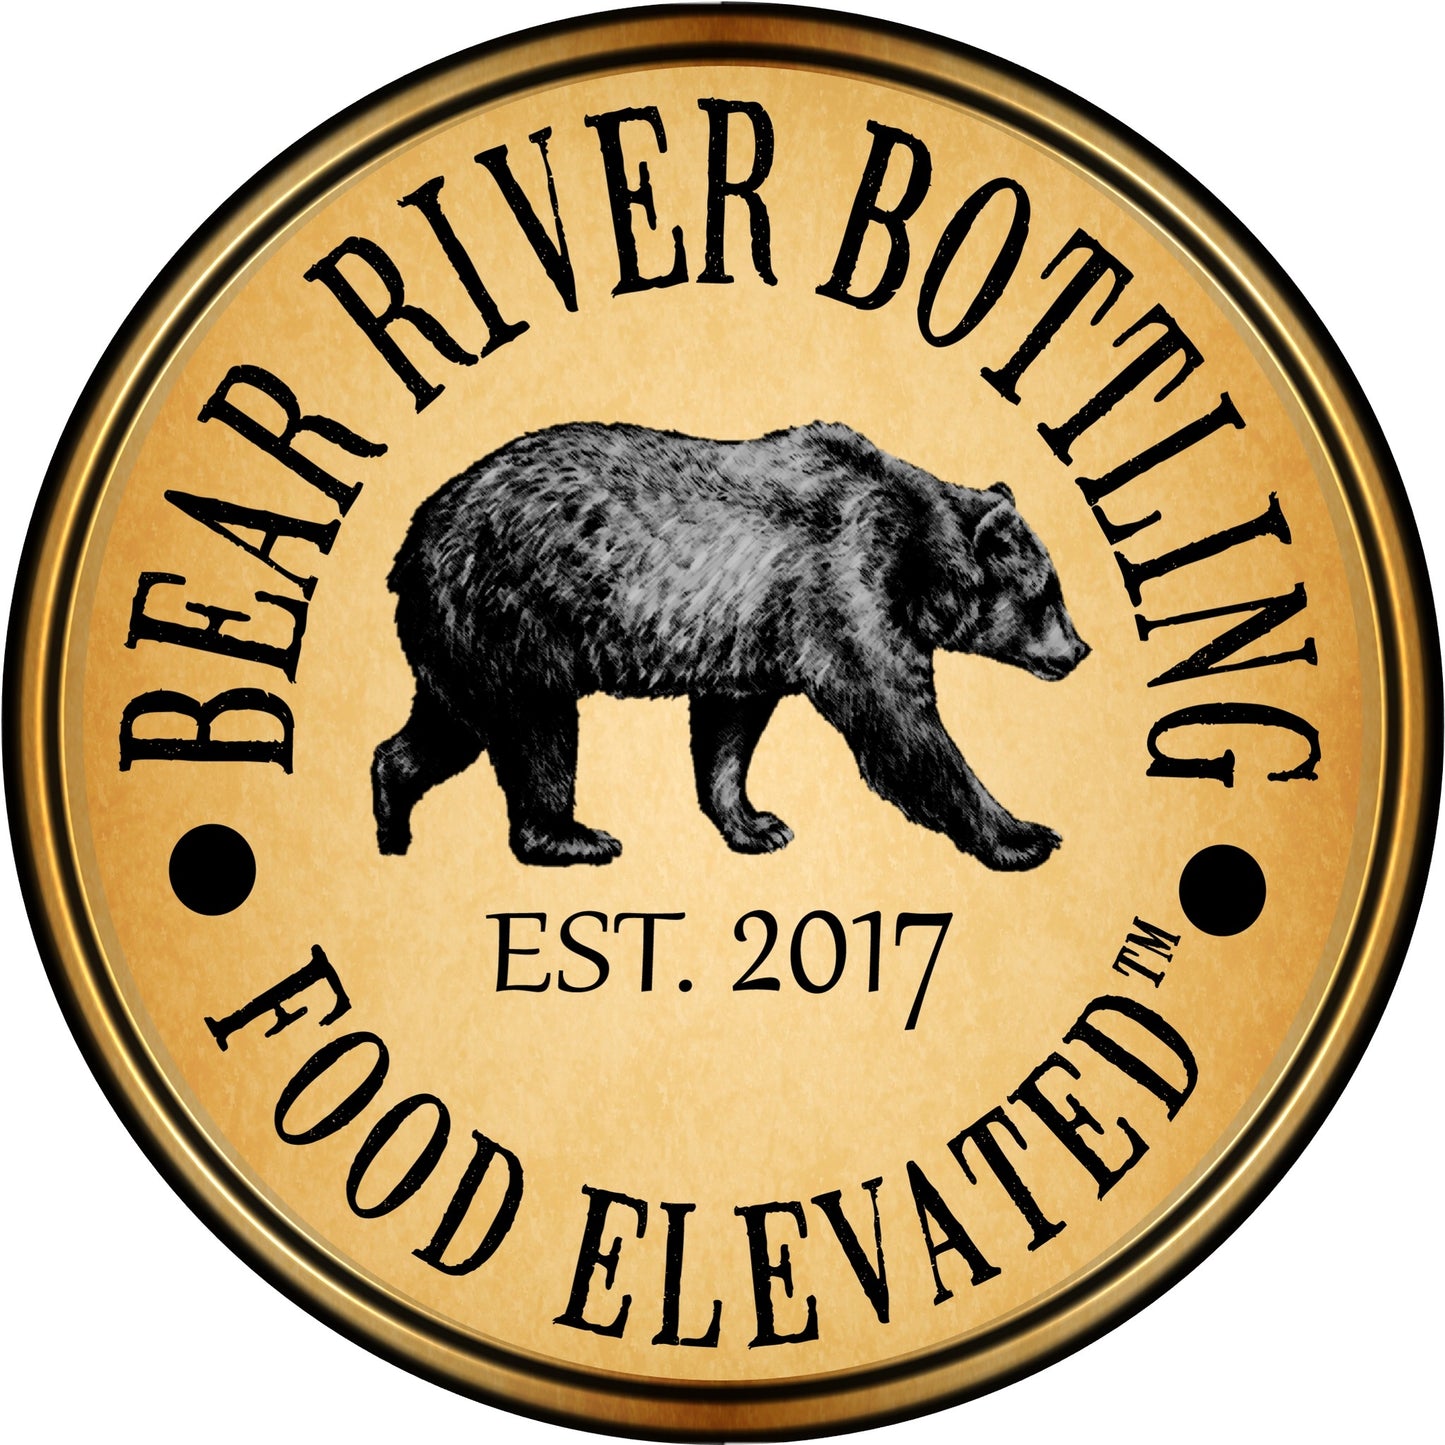 Bear River Bottling - Last Chance! - Harvest Harbinger 2022 - Utah 5oz